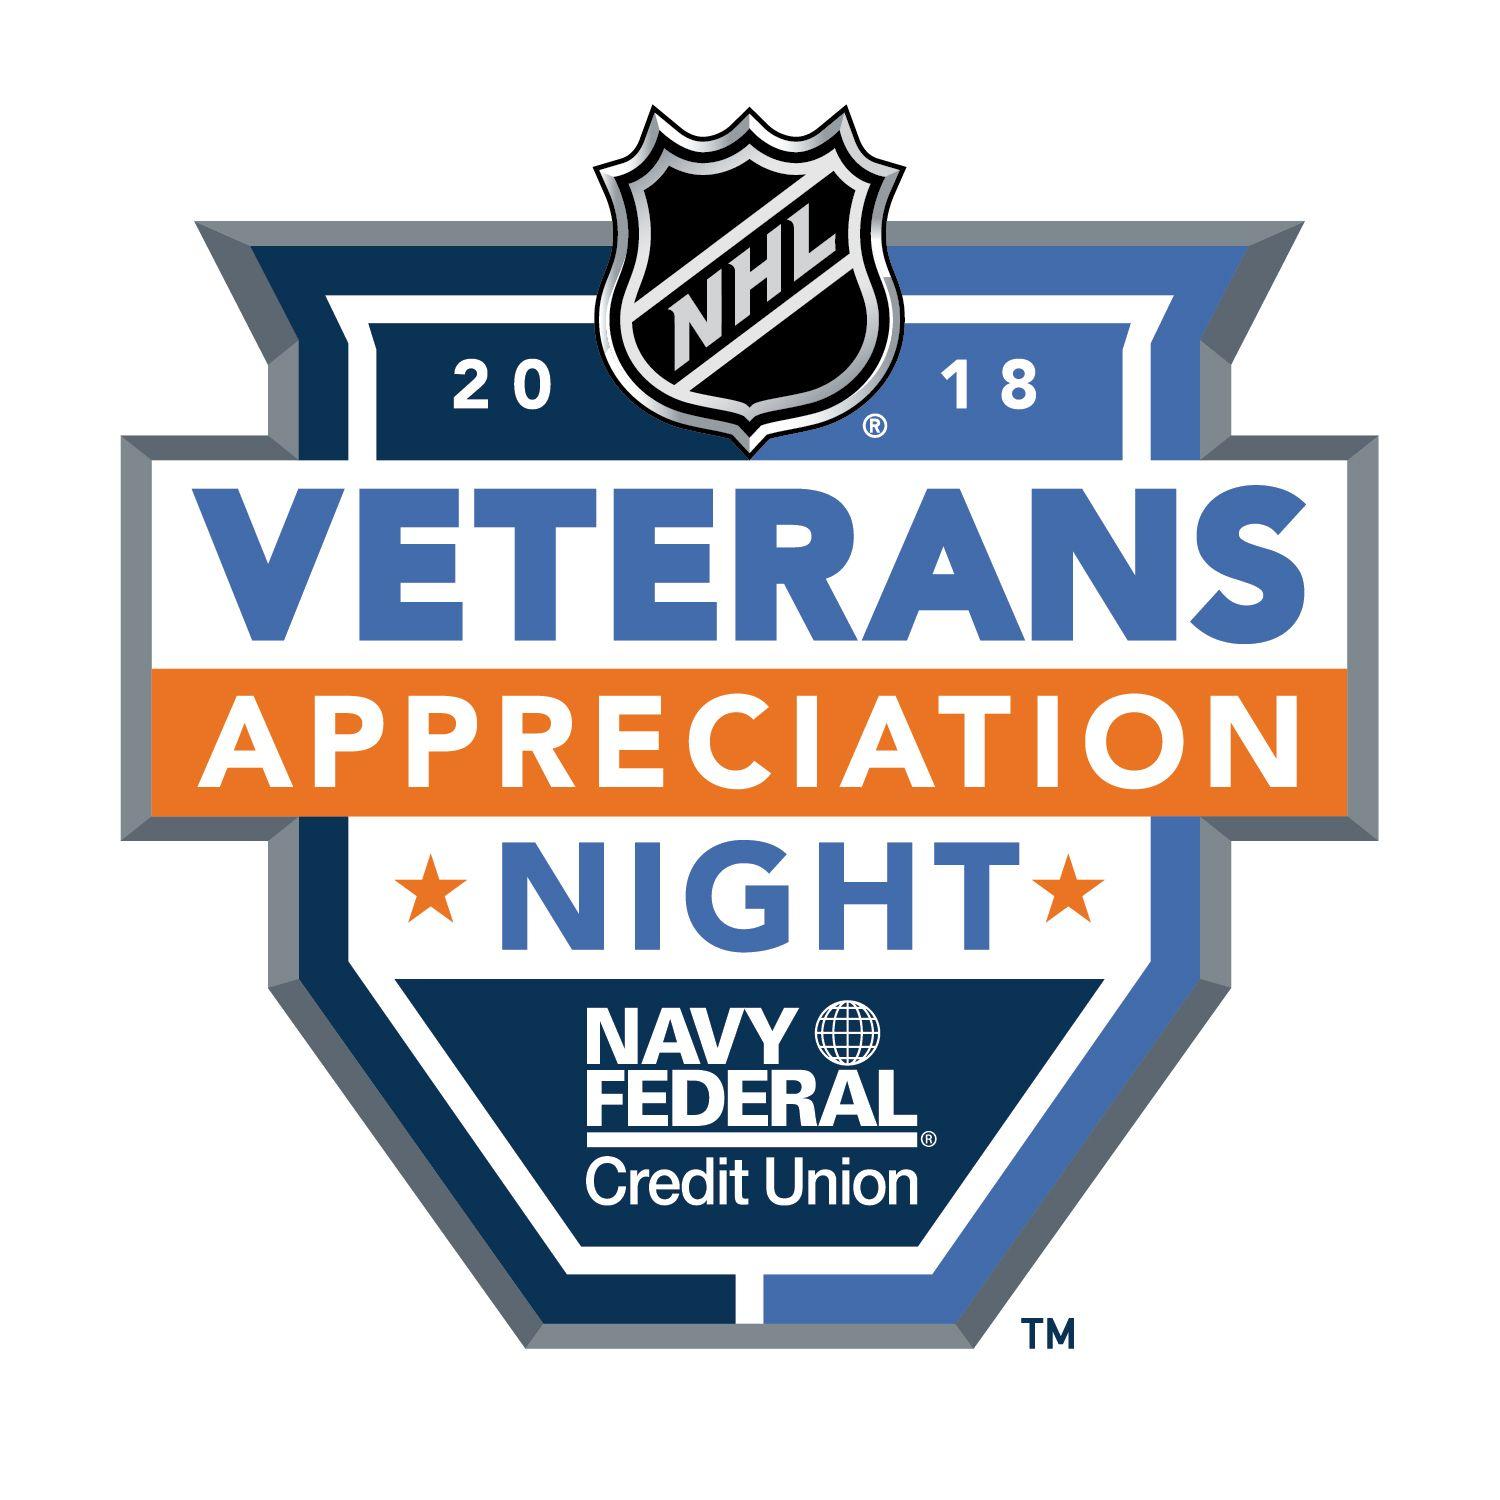 Nfcu Logo - NHL announces official military appreciation partner